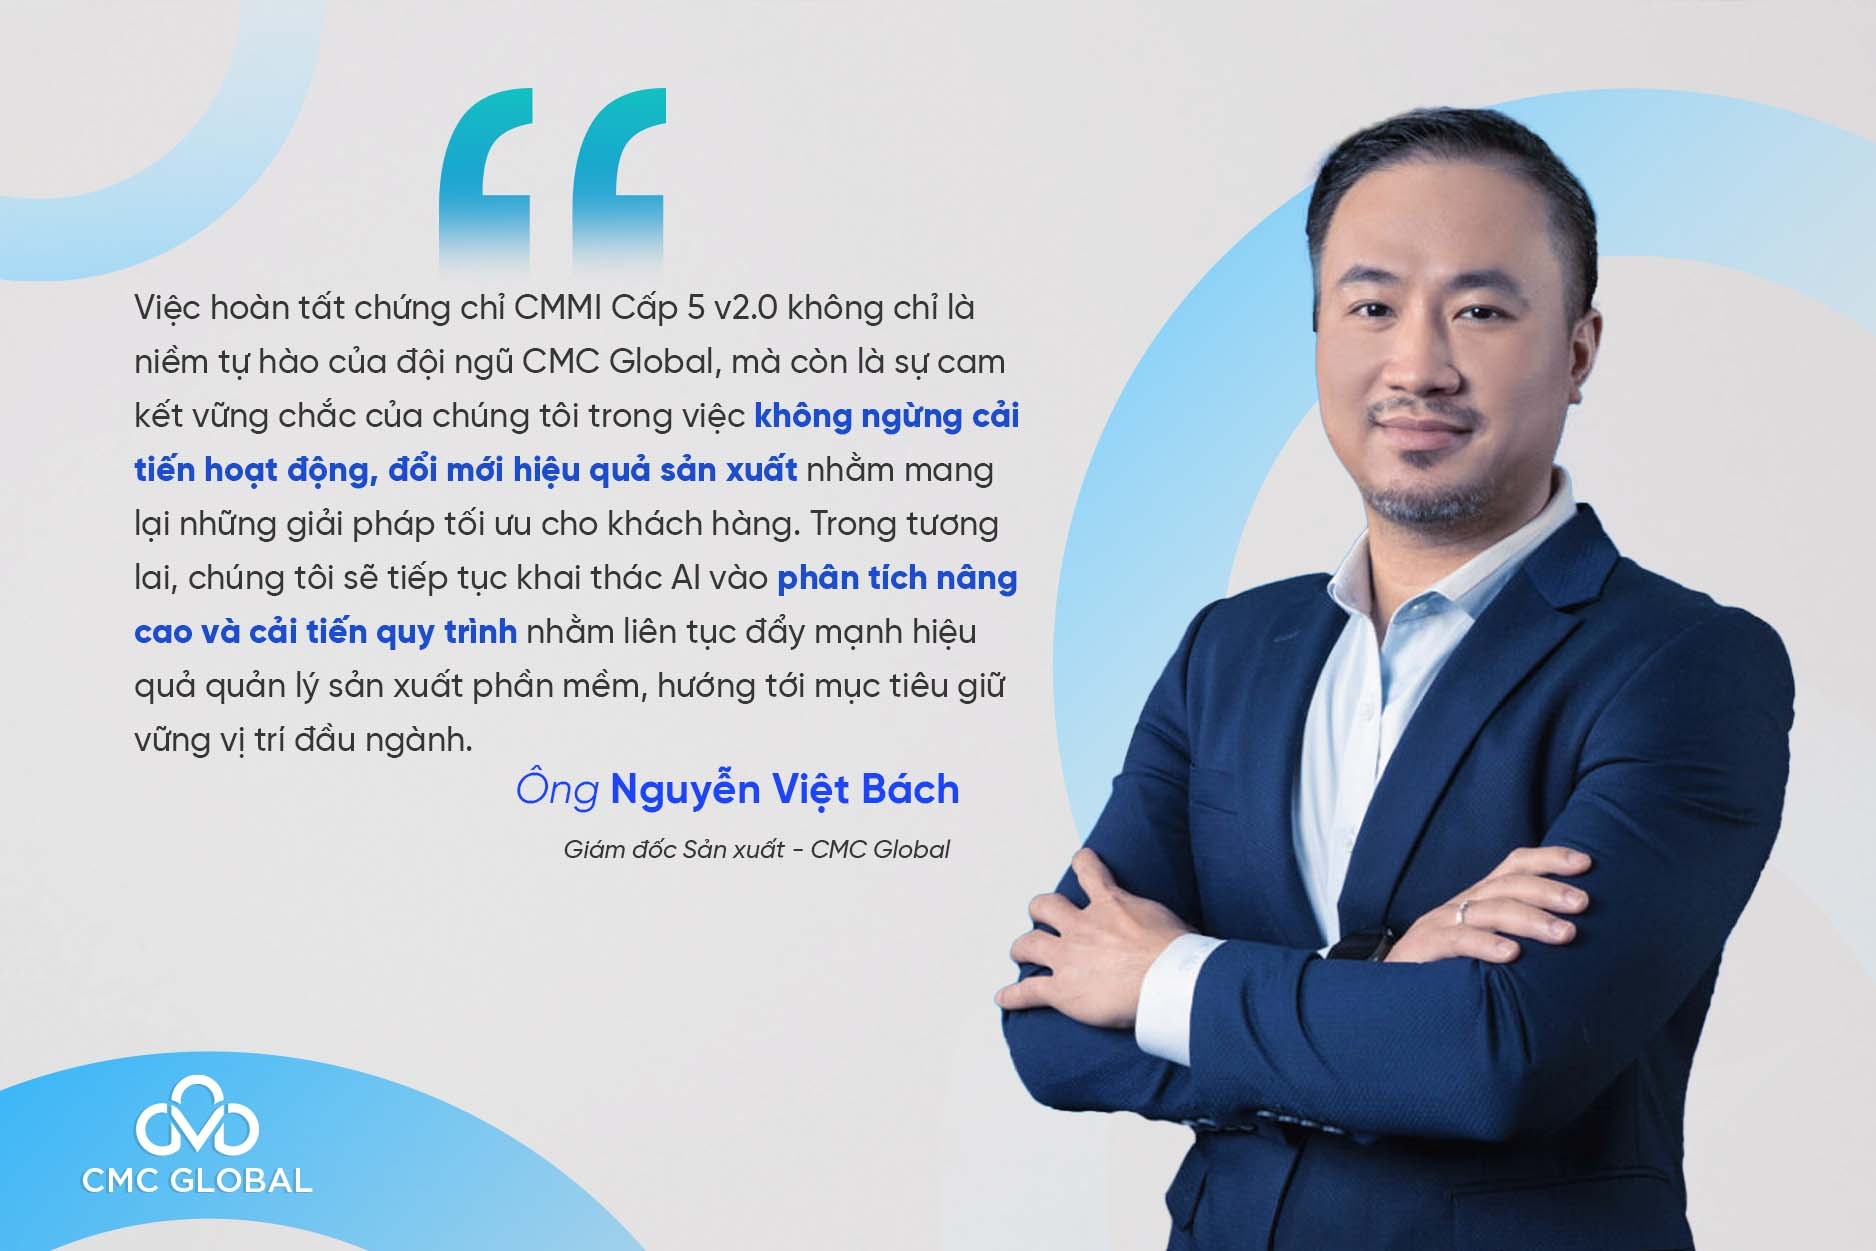 Ông Nguyễn Việt Bách - Giám đốc Sản xuất CMC Global chia sẻ về việc đạt chứng chỉ CMMI cấp 5 phiên bản 2.0